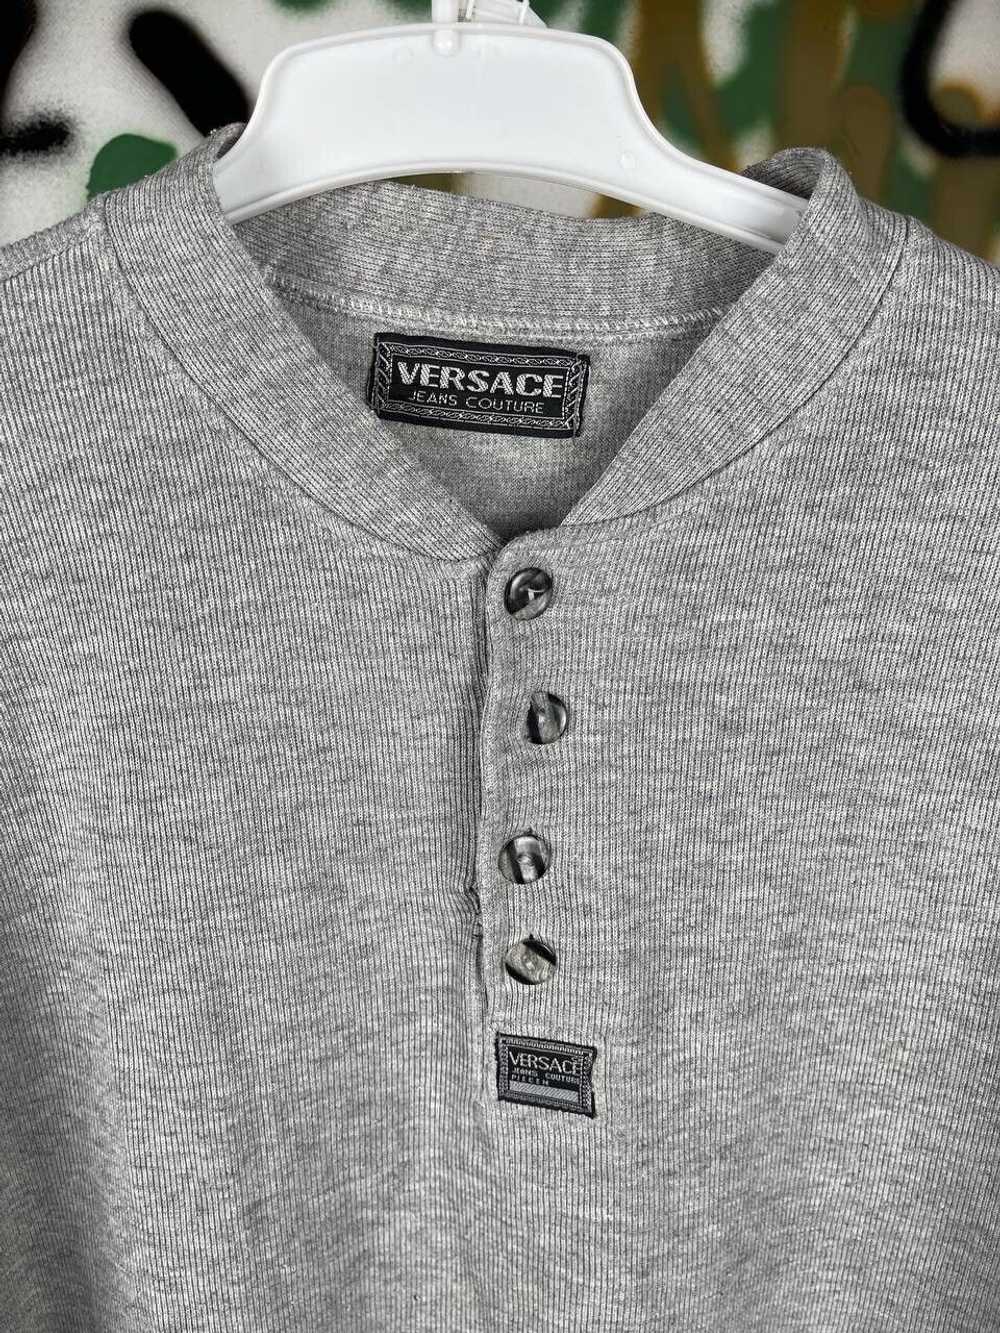 Versace × Vintage Vintage Versace Sweatshirt 90s … - image 4